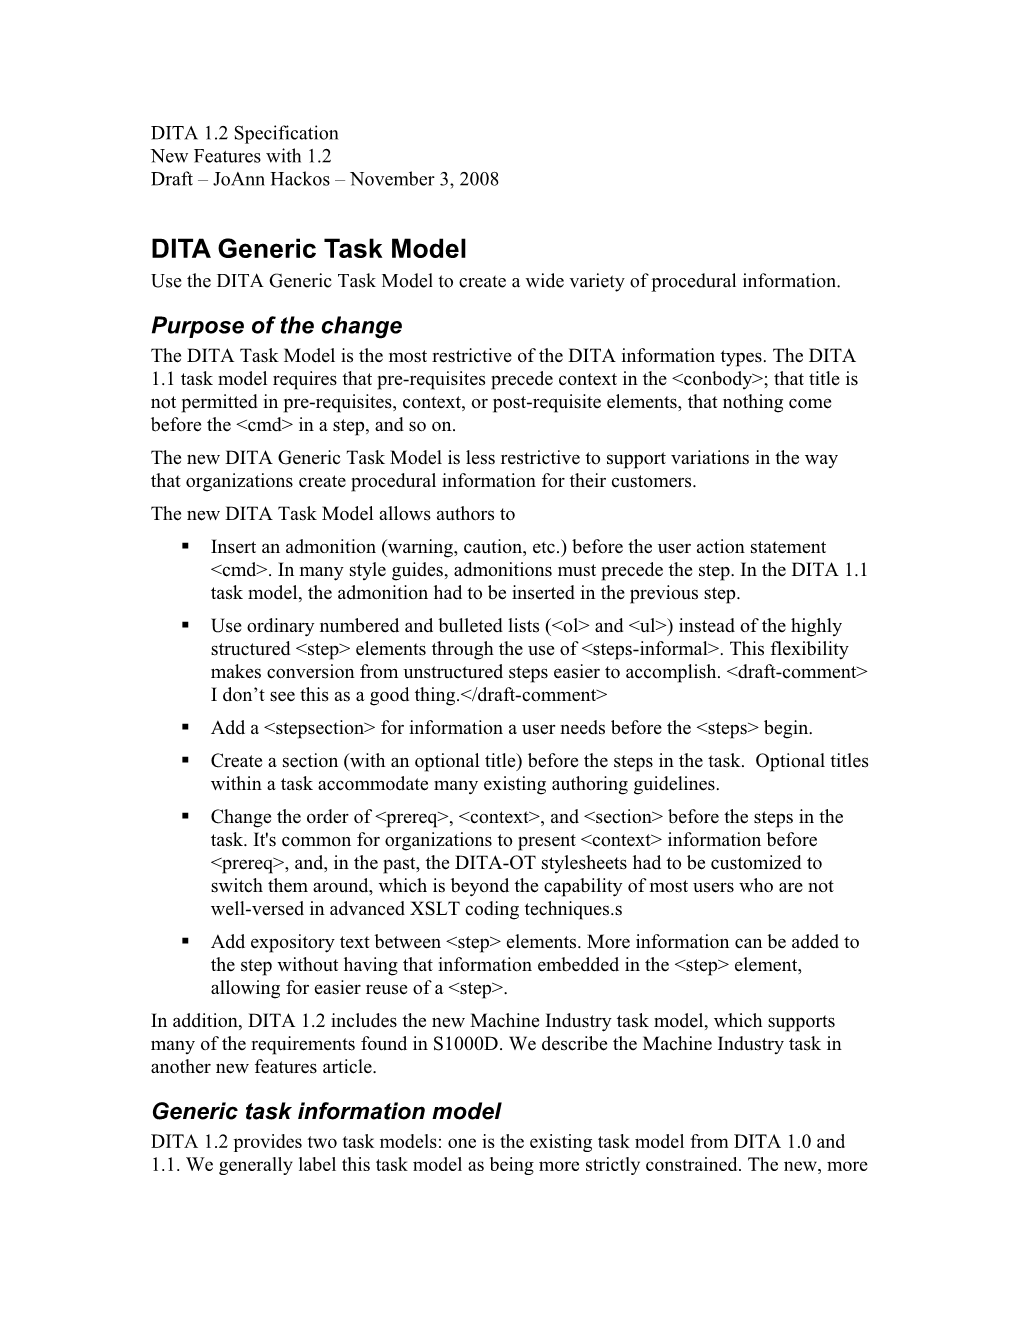 DITA Generic Task Model